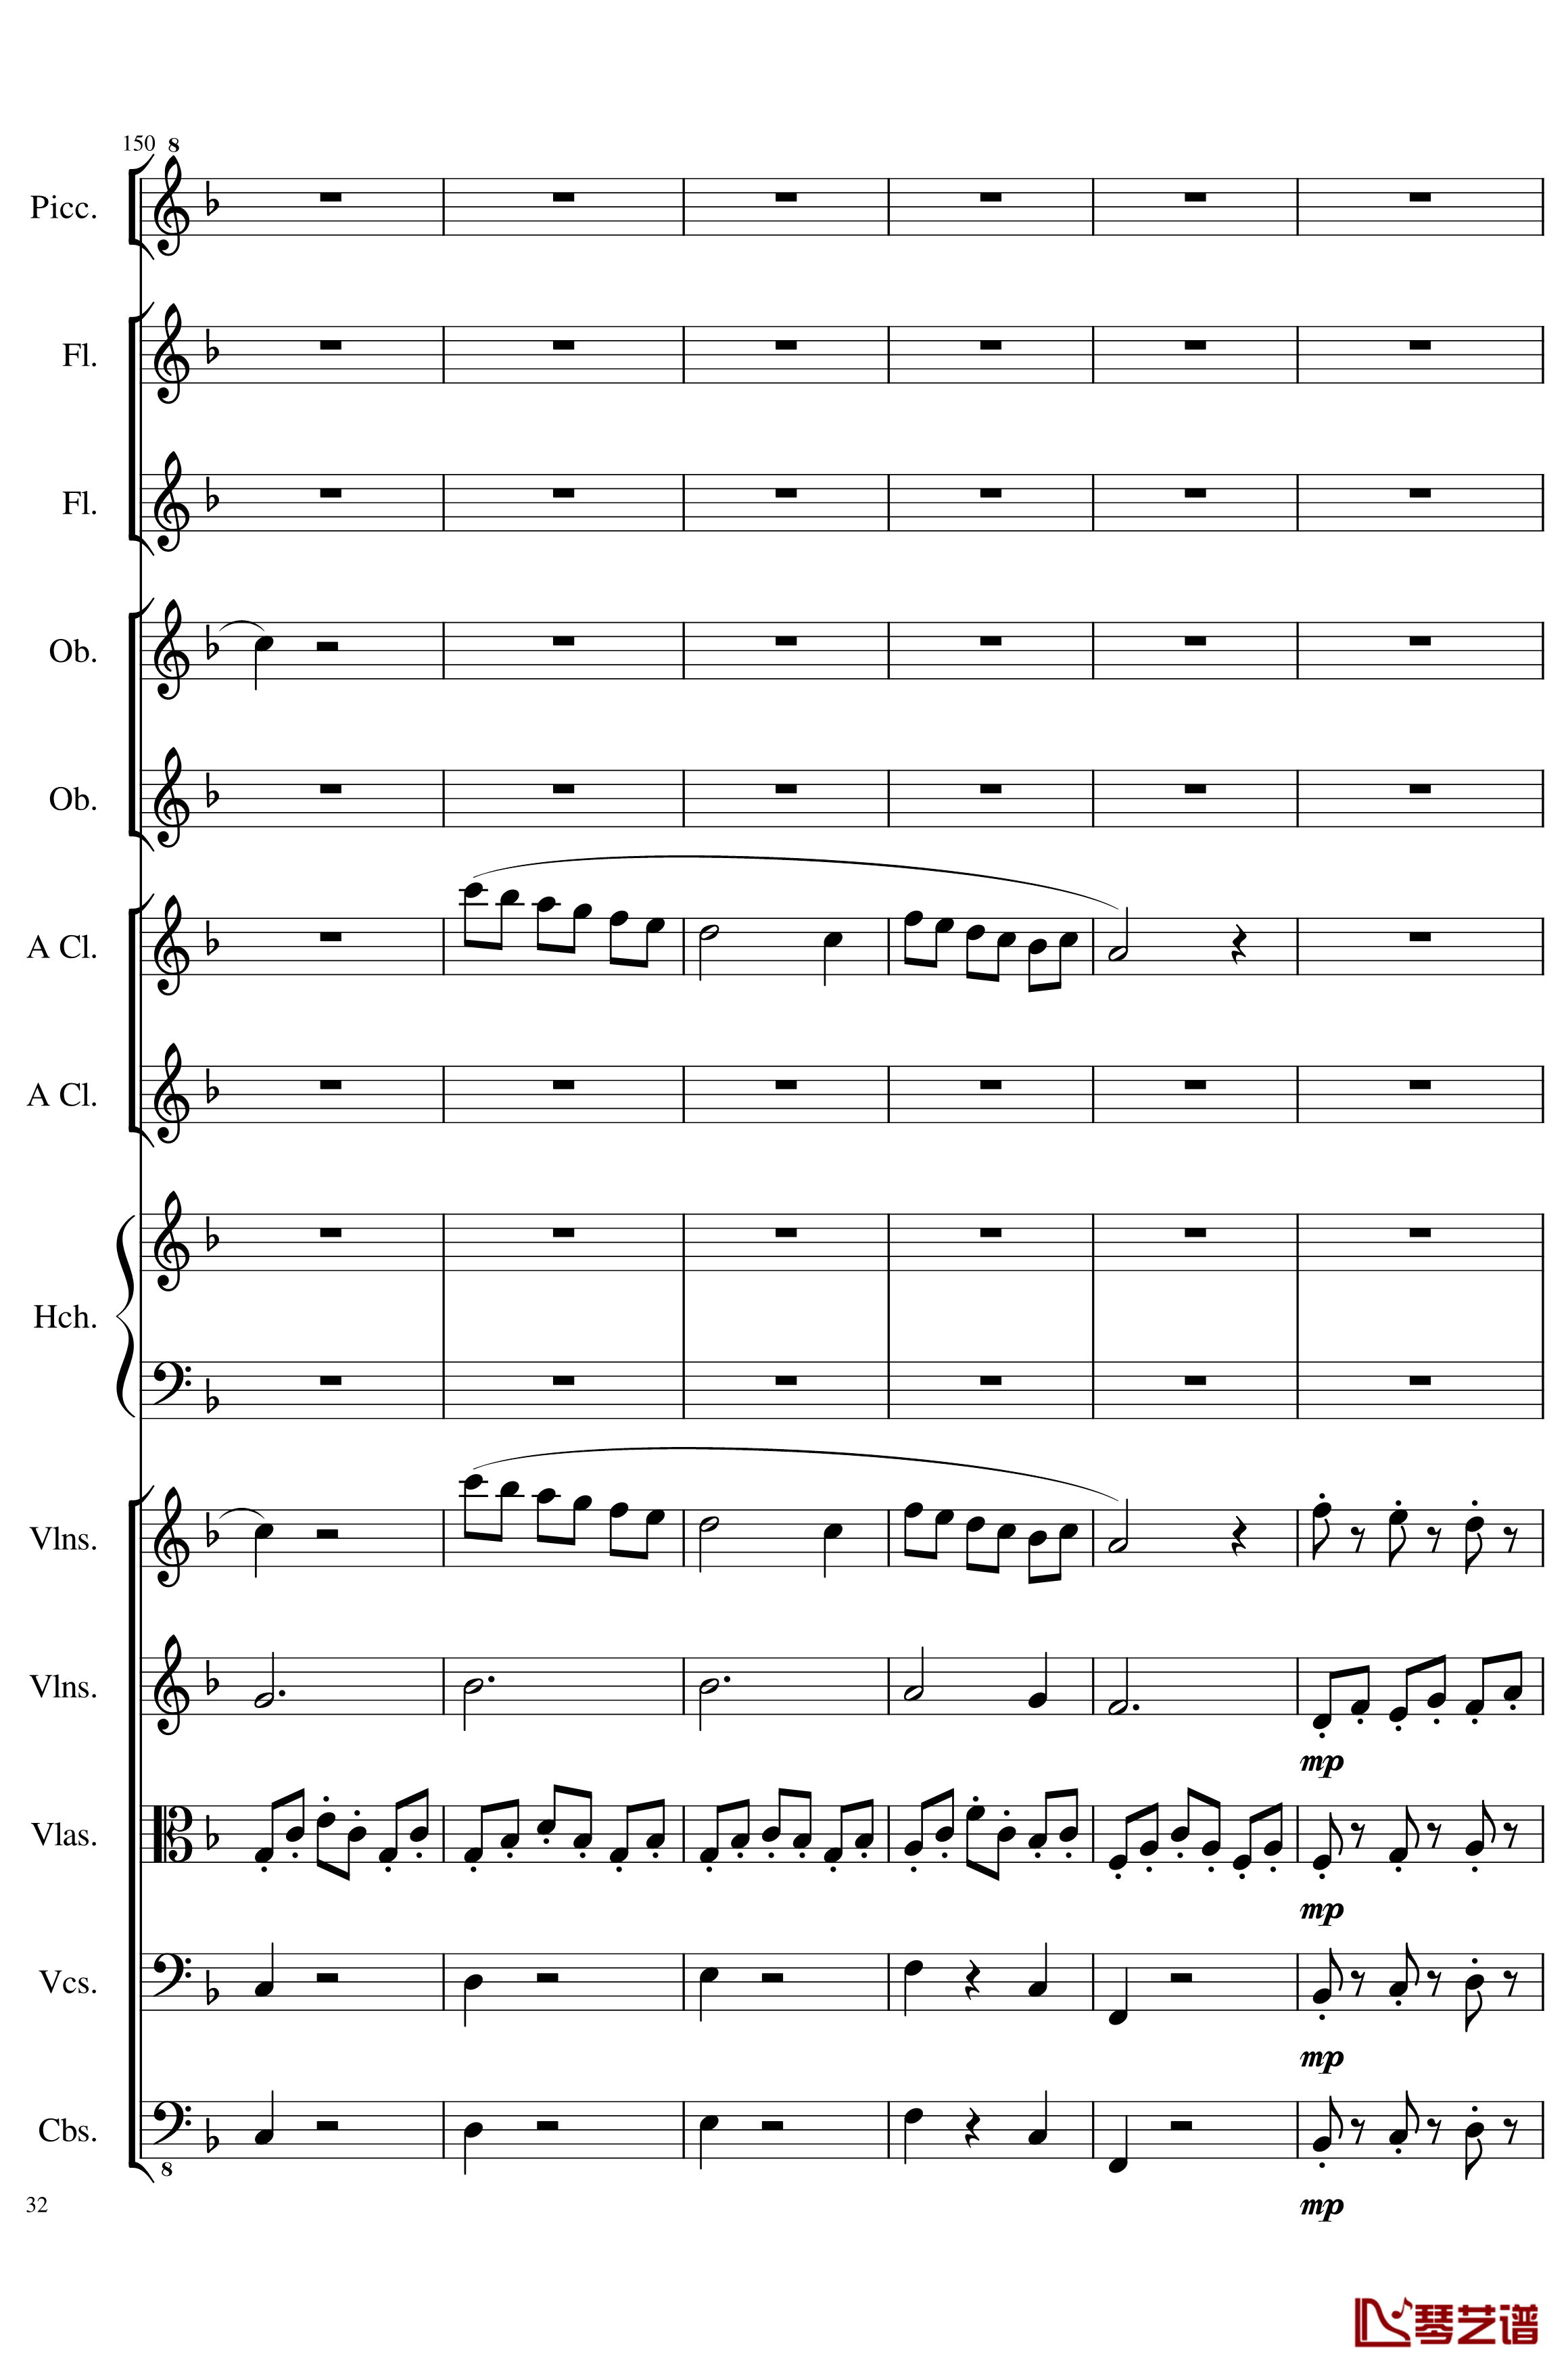 7 Contredanses No.1-7, Op.124钢琴谱-7首乡村舞曲，第一至第七，作品124-一个球32